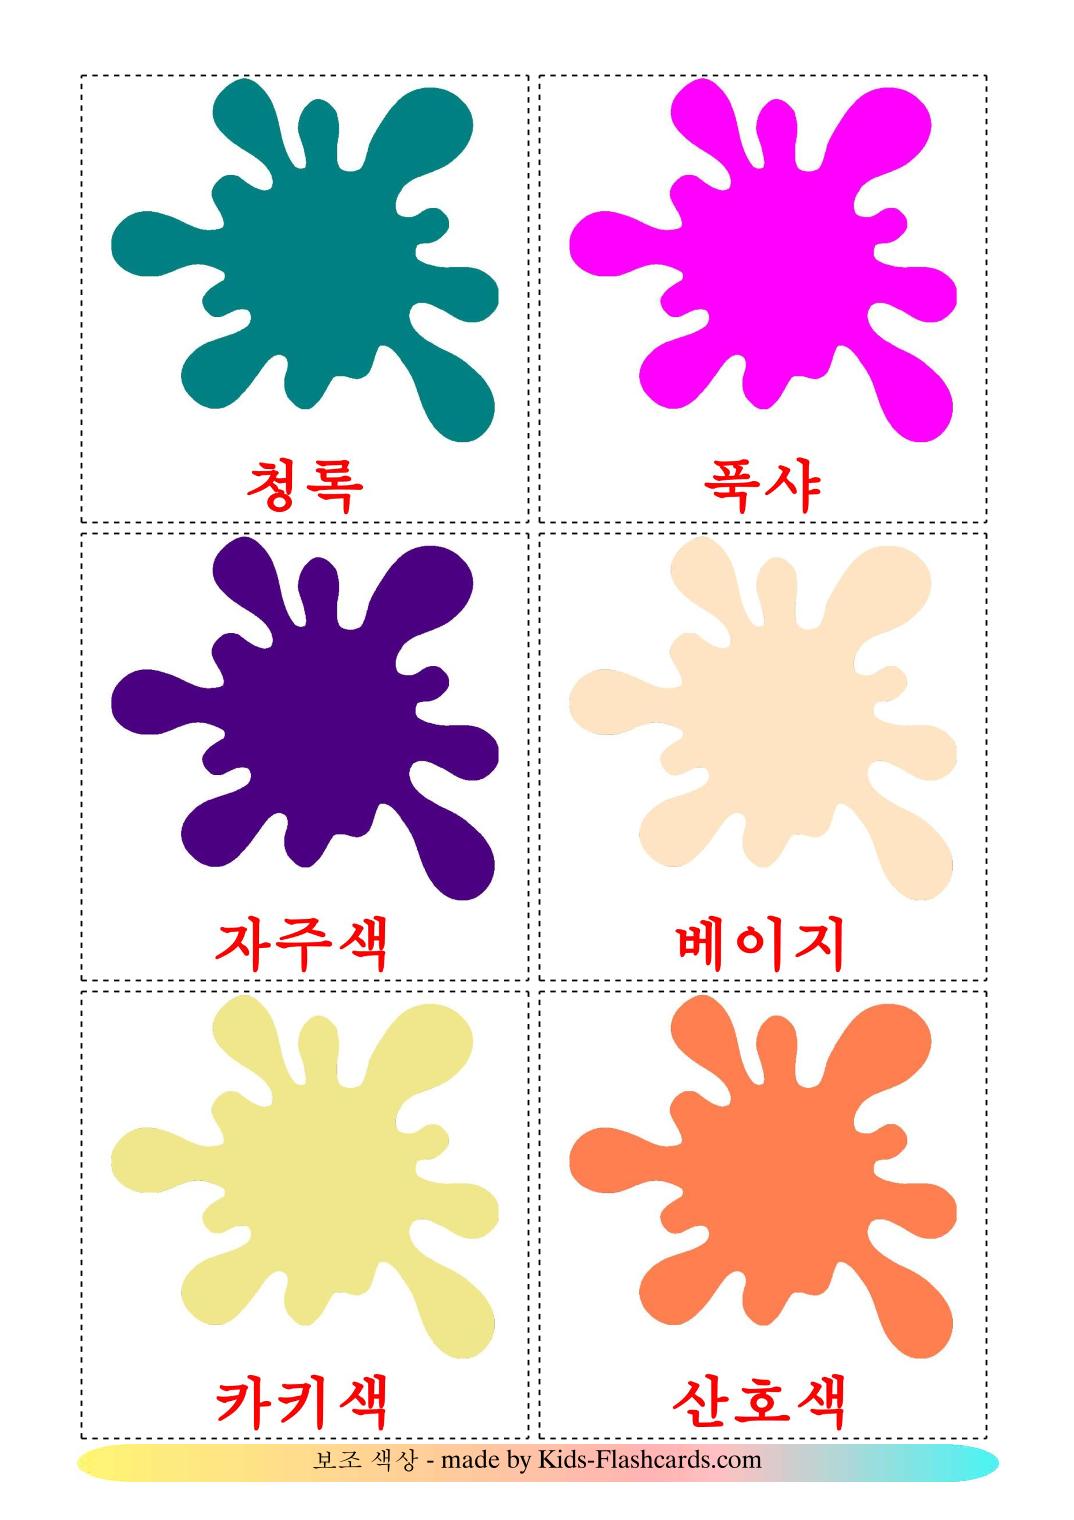 Couleurs Secondaires - 20 Flashcards coréen imprimables gratuitement